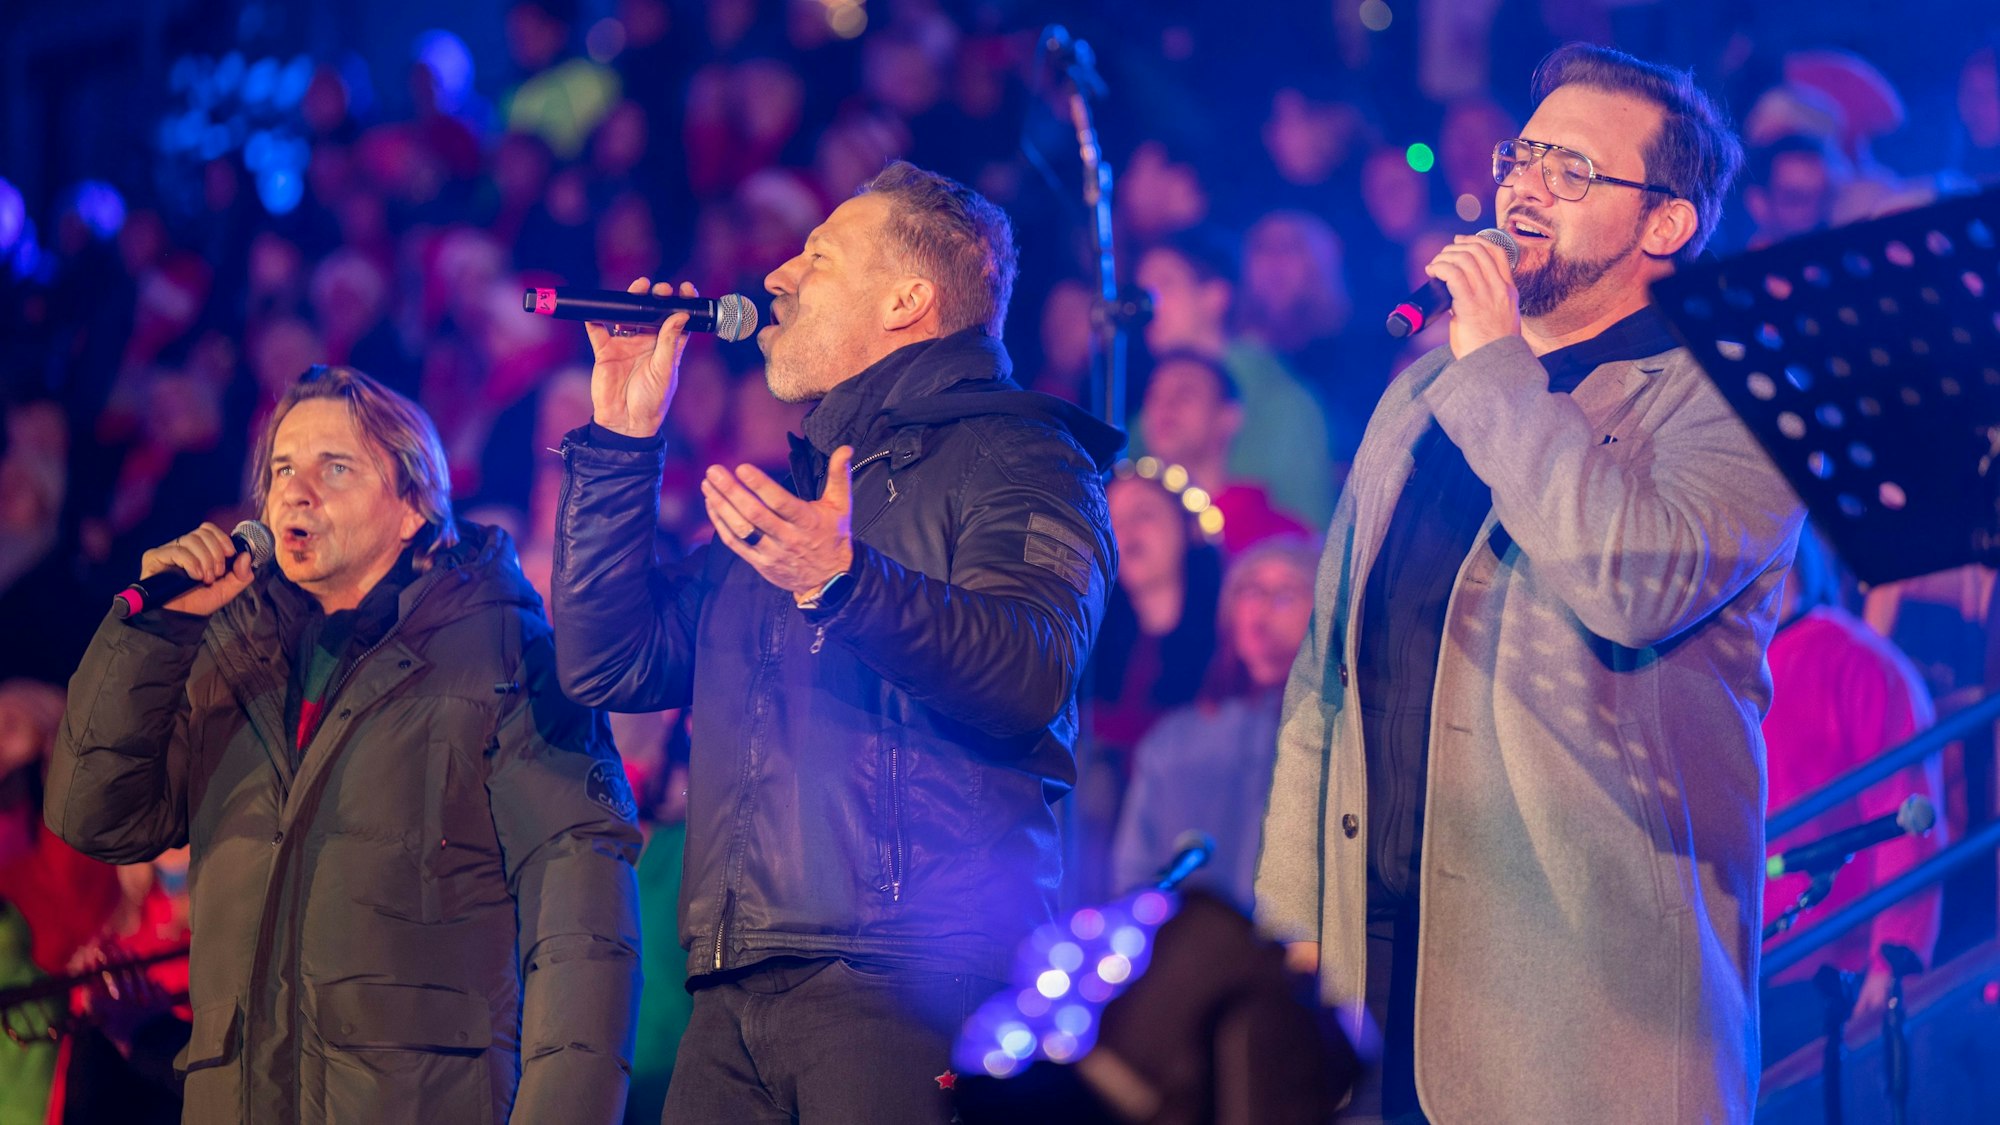 Die Höhner singen beim Mitsing-Konzert Loss mer Weihnachtsleeder singe im Rhein-Energie-Stadion.